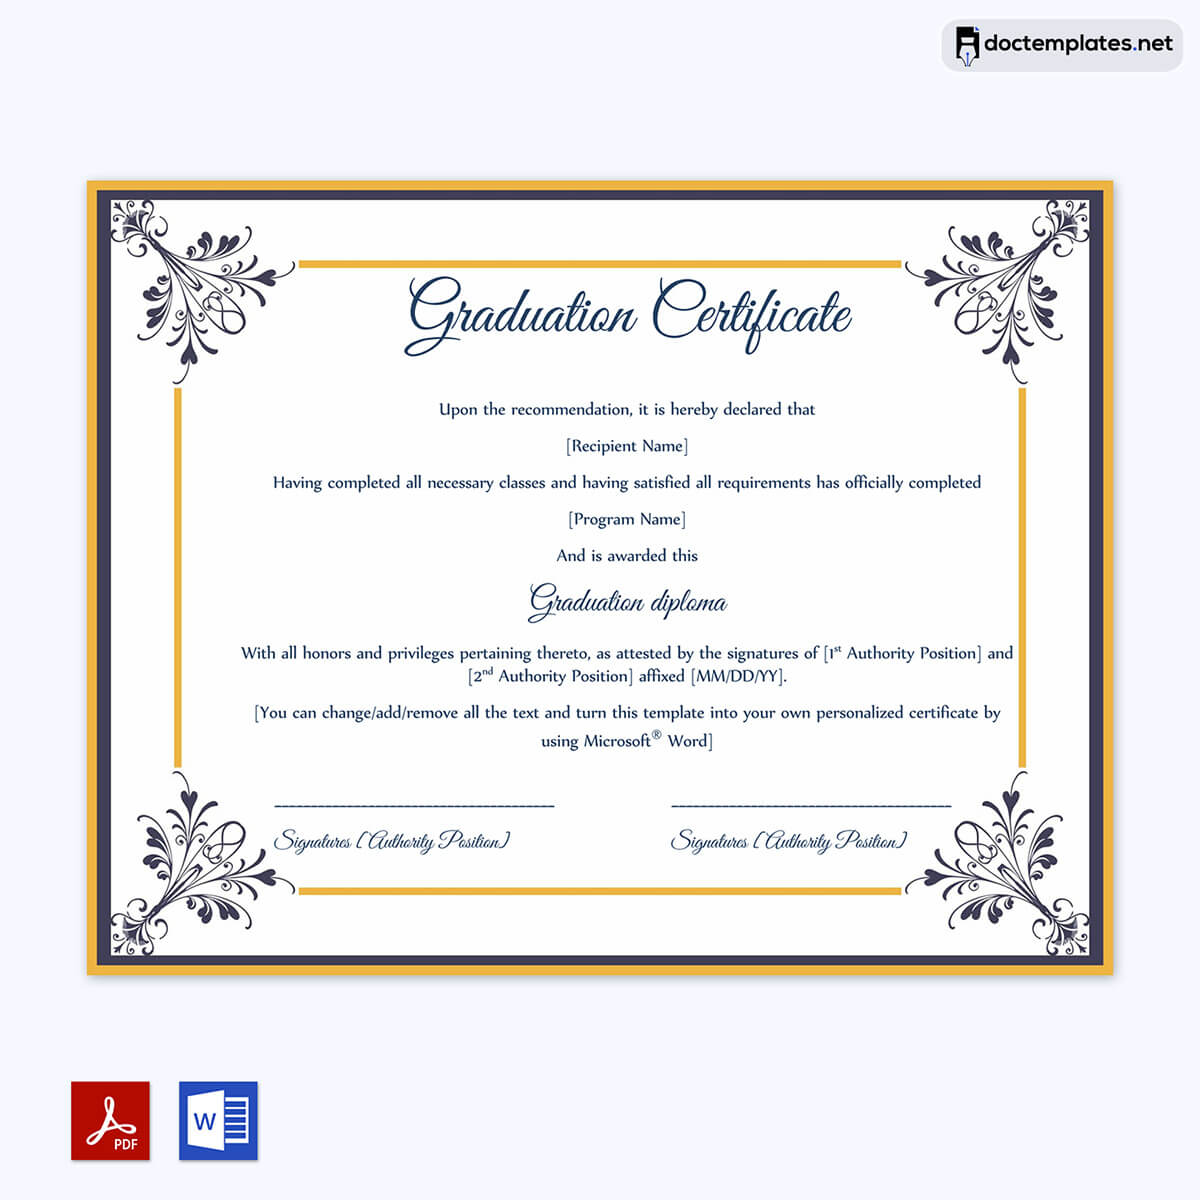 Image of Graduation Certificate Template editable
Graduation Certificate Template editable
